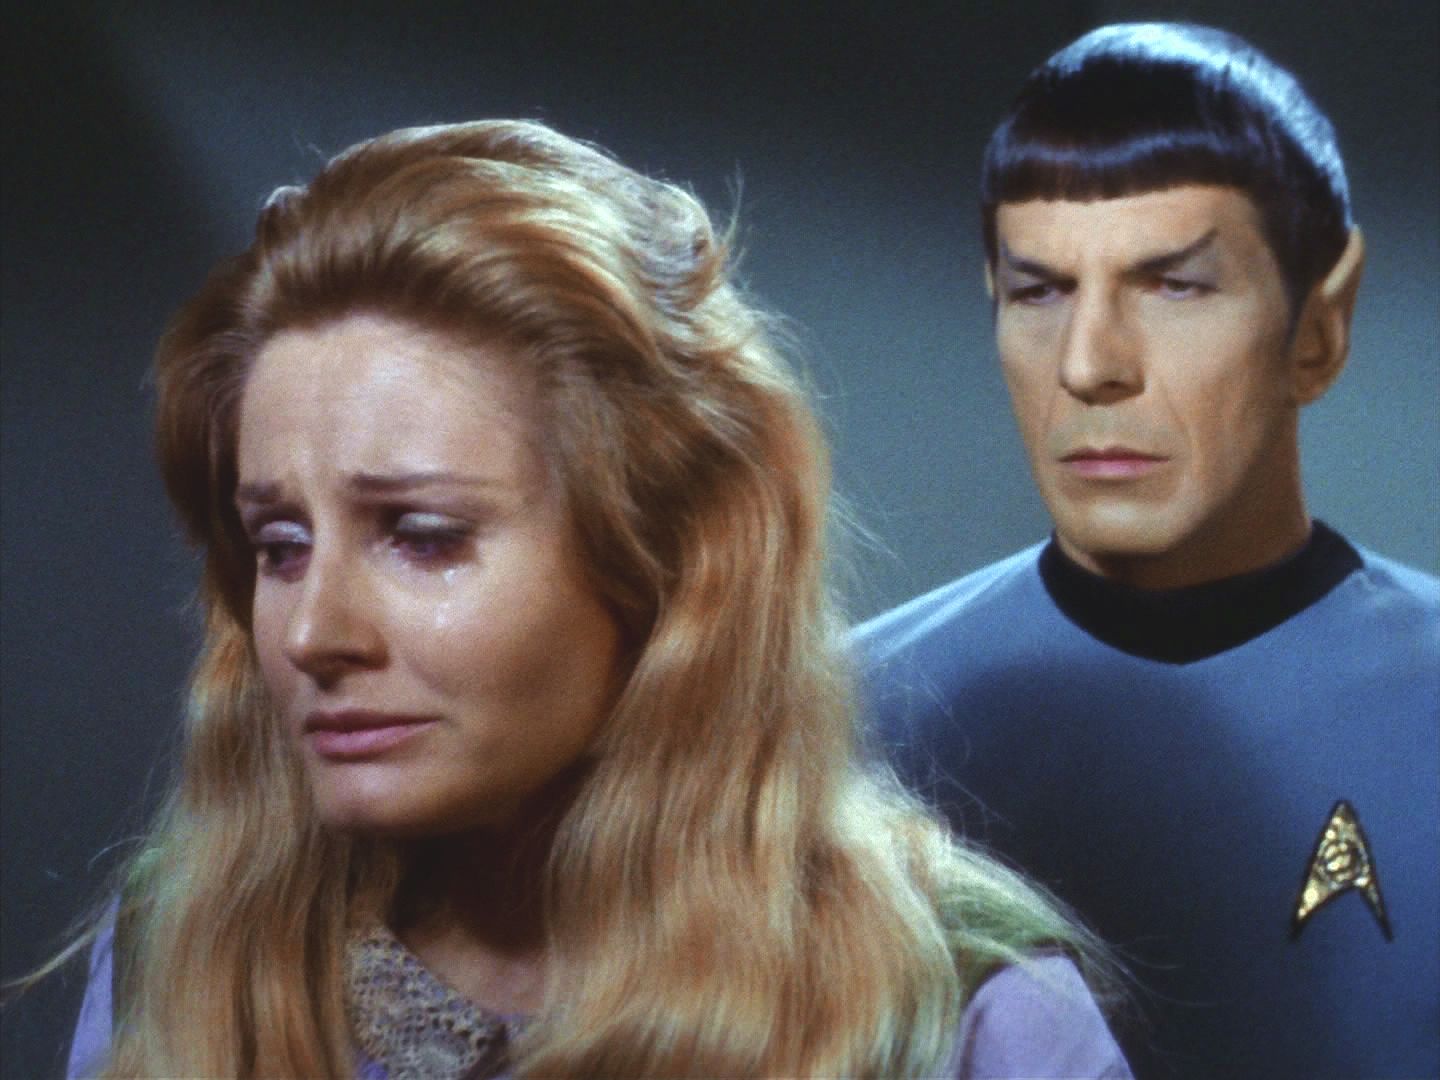 Potom Spock transportoval Leilu. Ta pochopila, že Spock je opět normální a že už s ním nemůže být. Zklamání vysvobodilo z vlivu spor také ji.